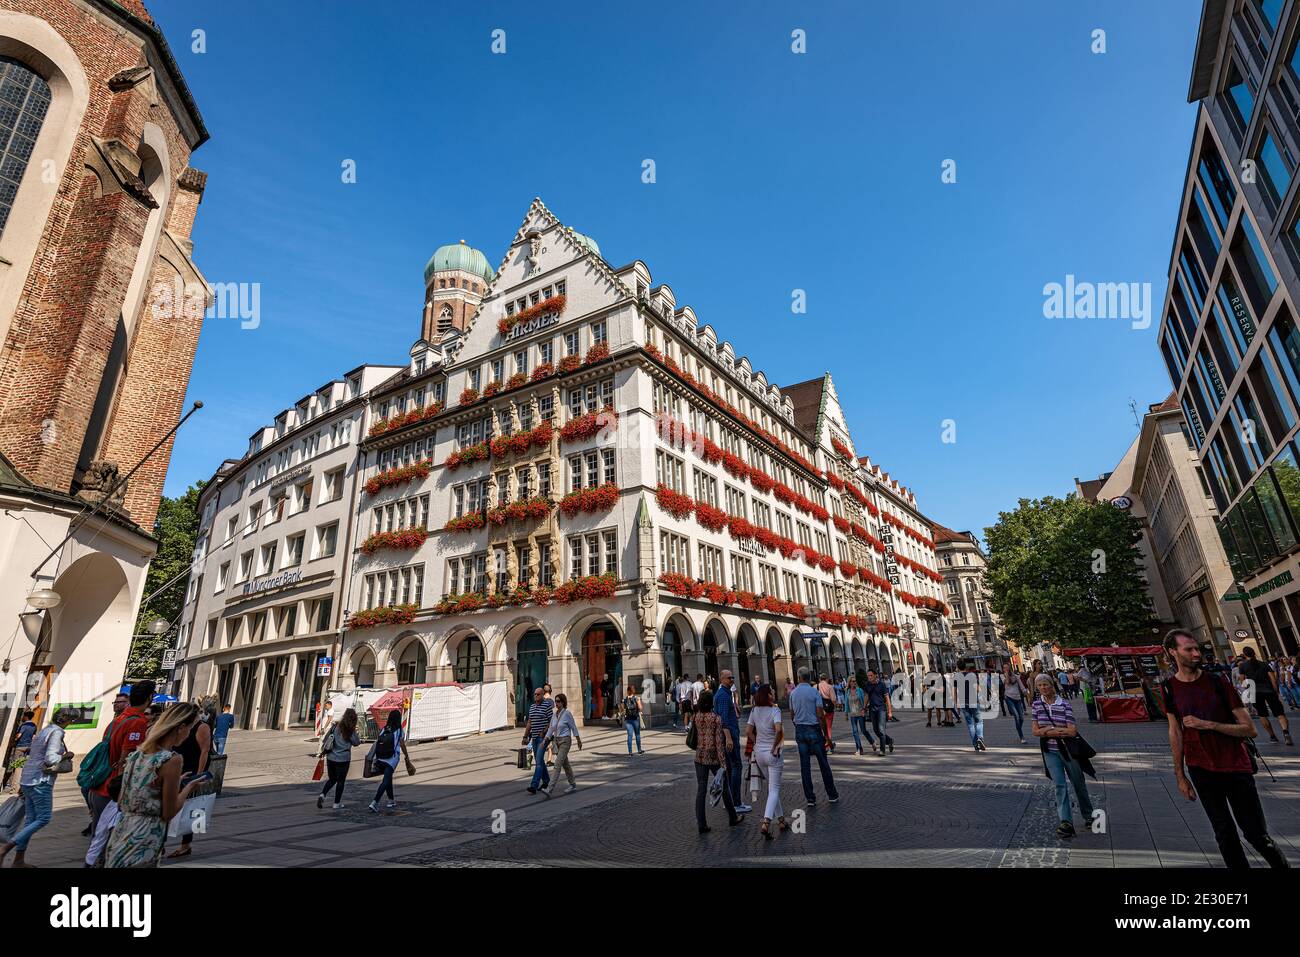 Kaufingerstrasse, via dello shopping e zona pedonale nel centro di Monaco, vicino alla Marienplatz, con il palazzo chiamato Zum Schonen Turm. Foto Stock